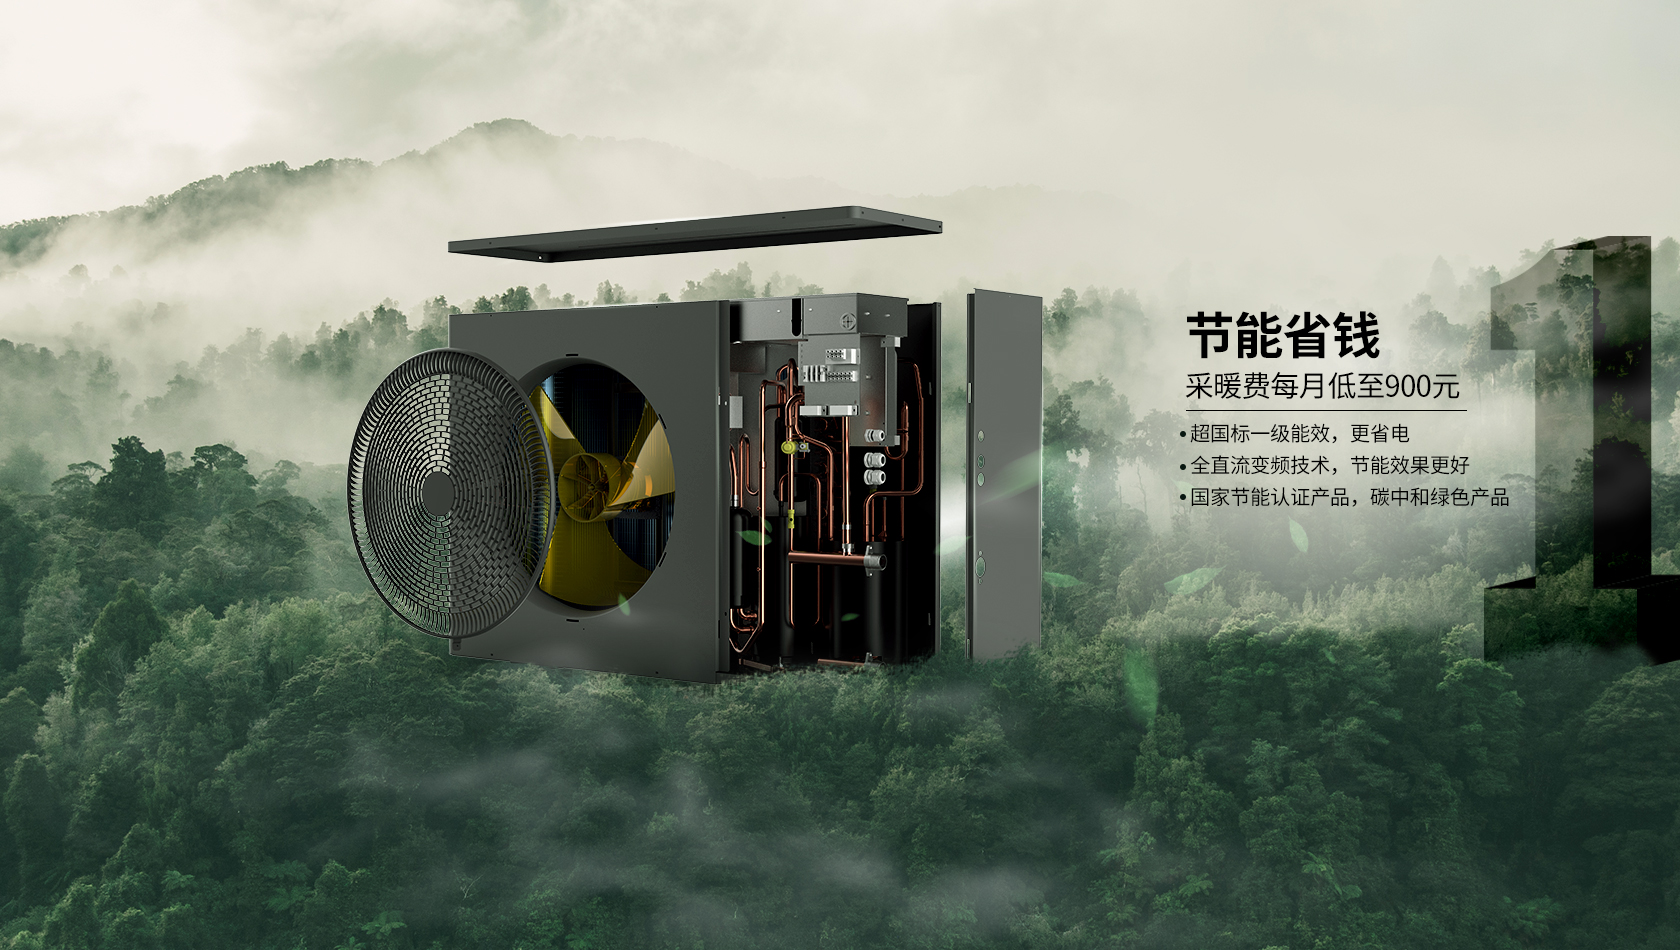 1274萬 | 熱立方地暖機連續第八年中標北京煤改電